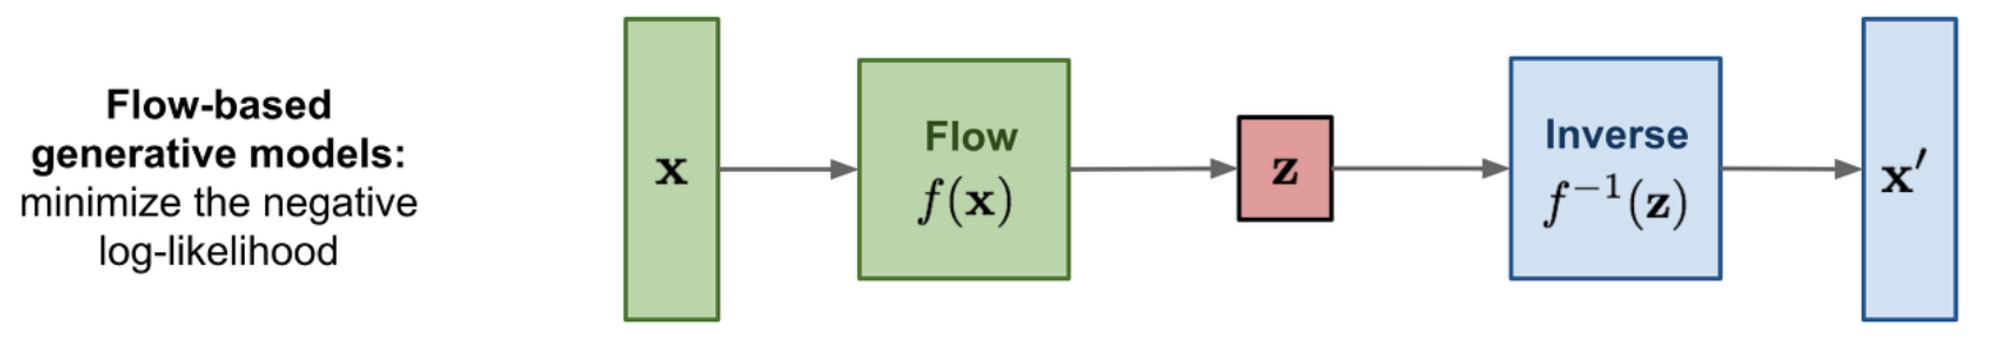 flow model 구조